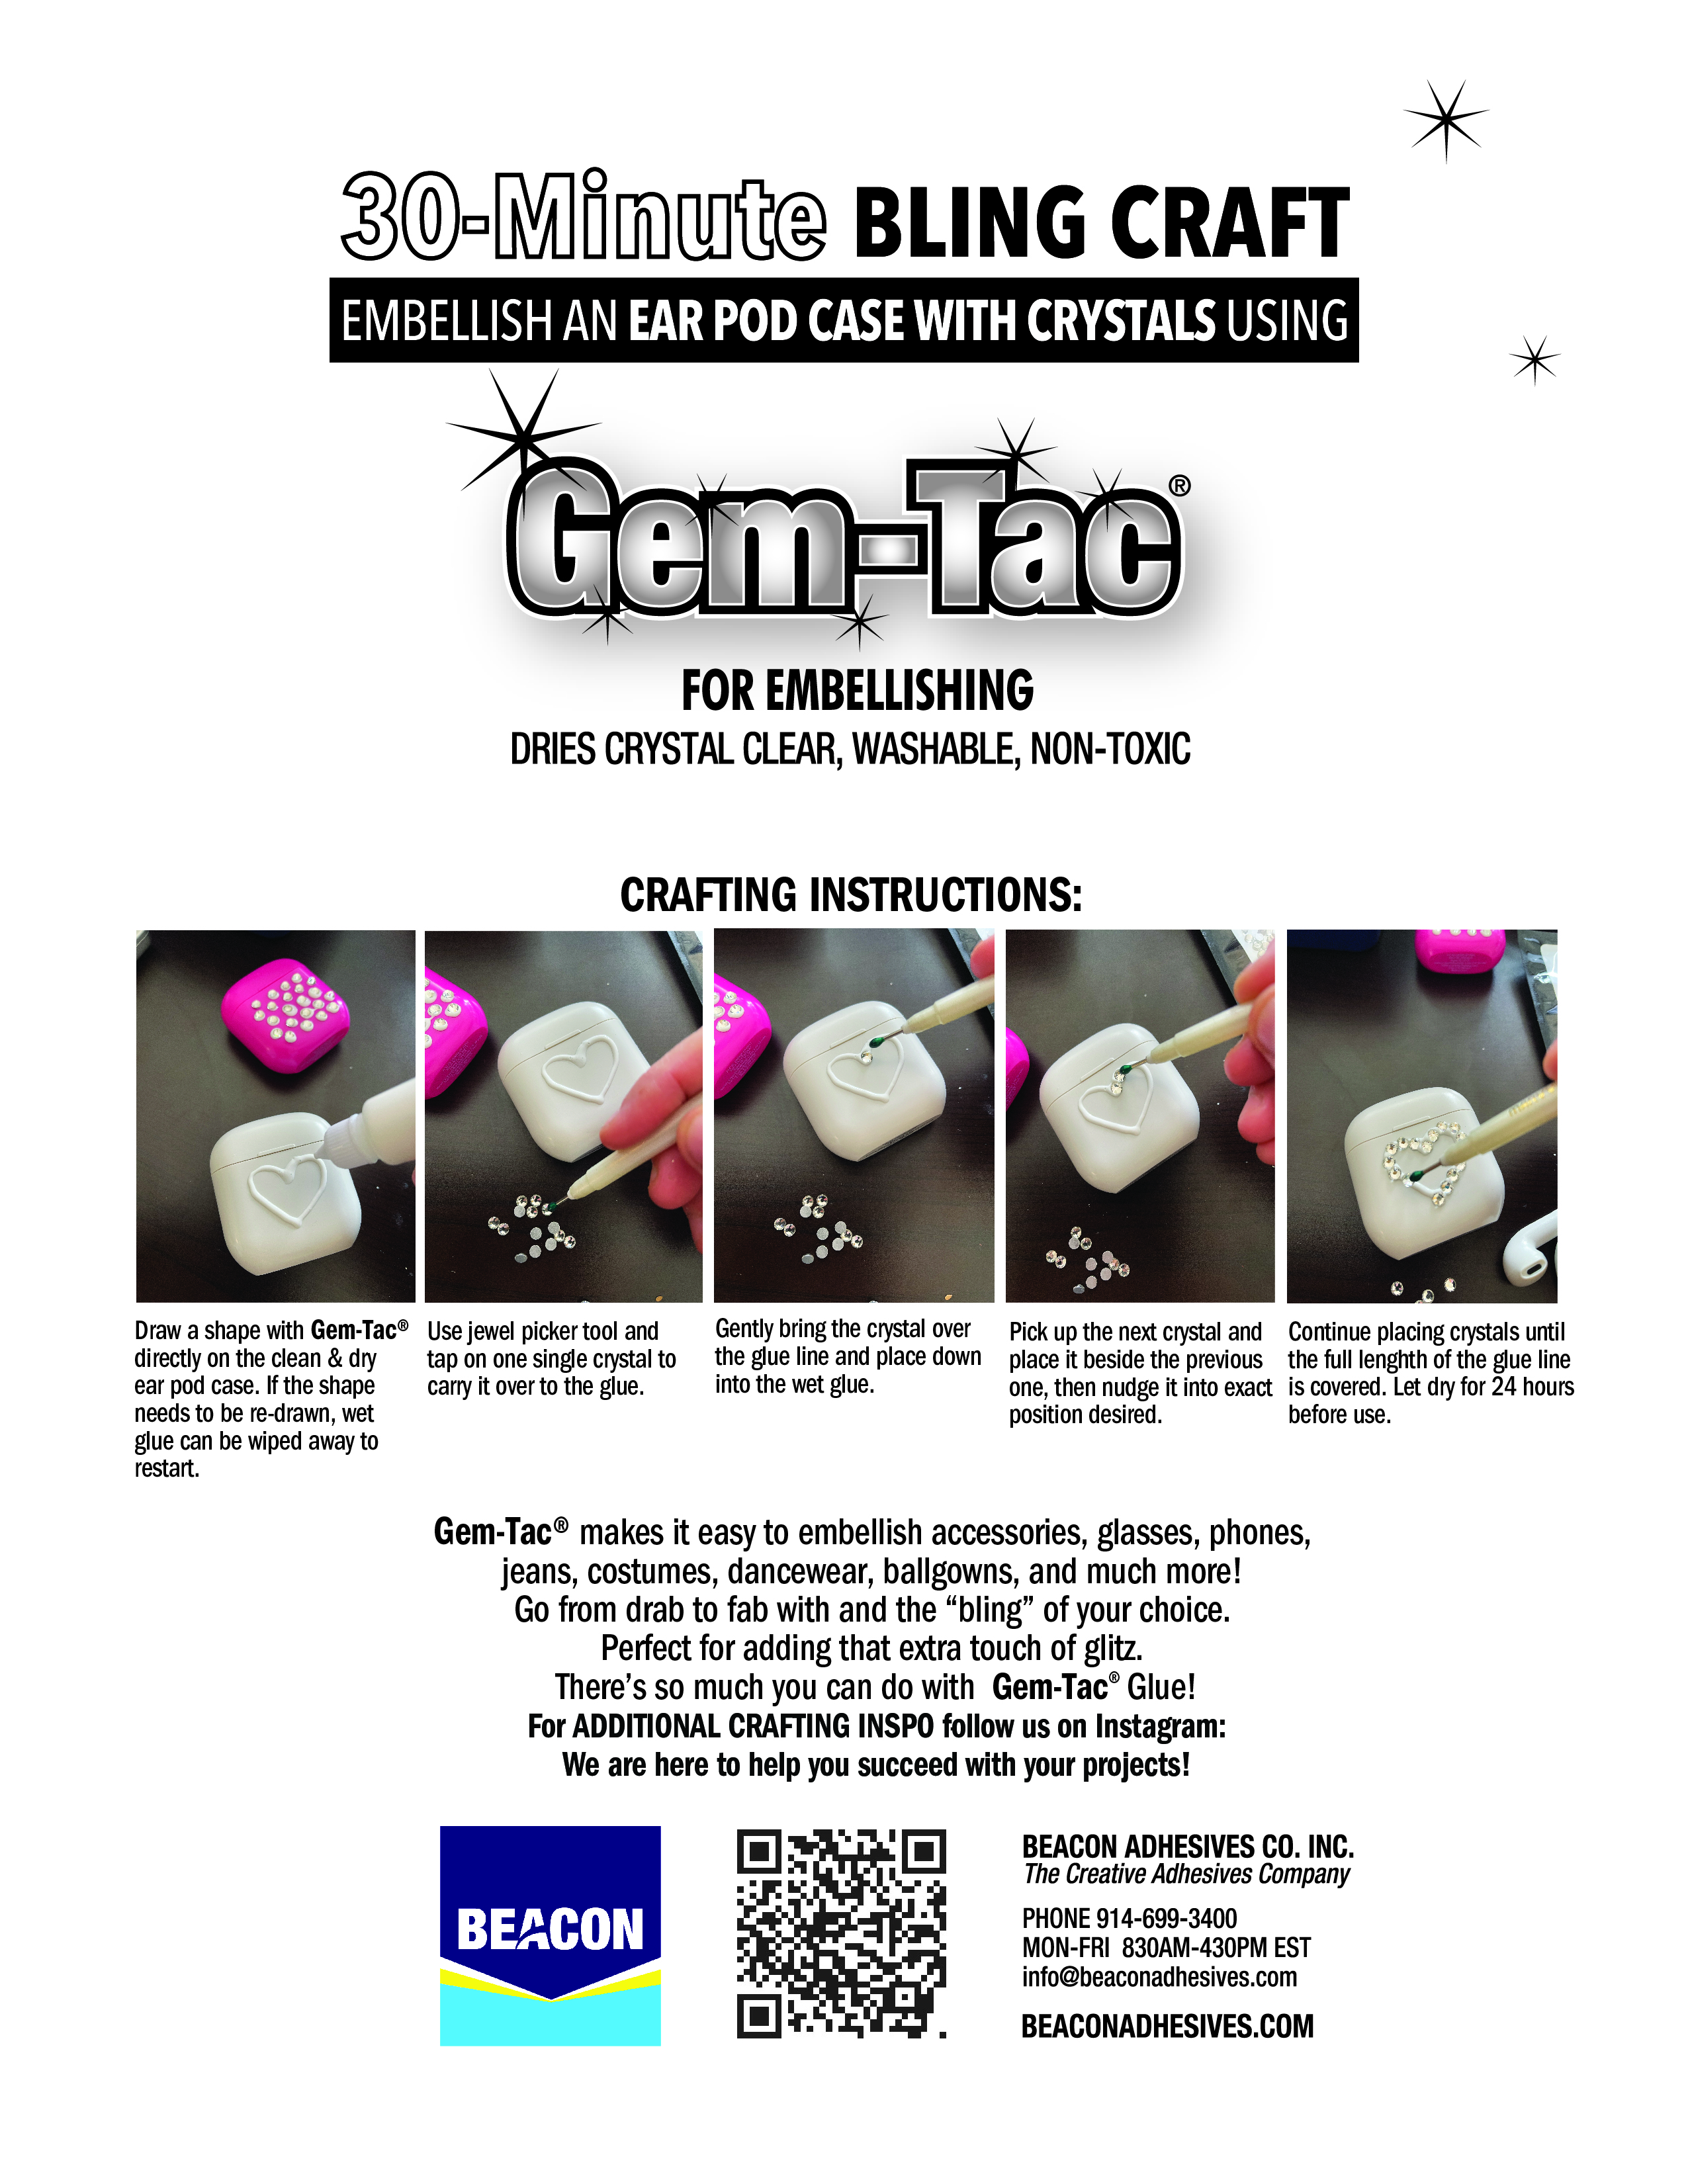 Beacon Gem Tac Glue 5ml Tube